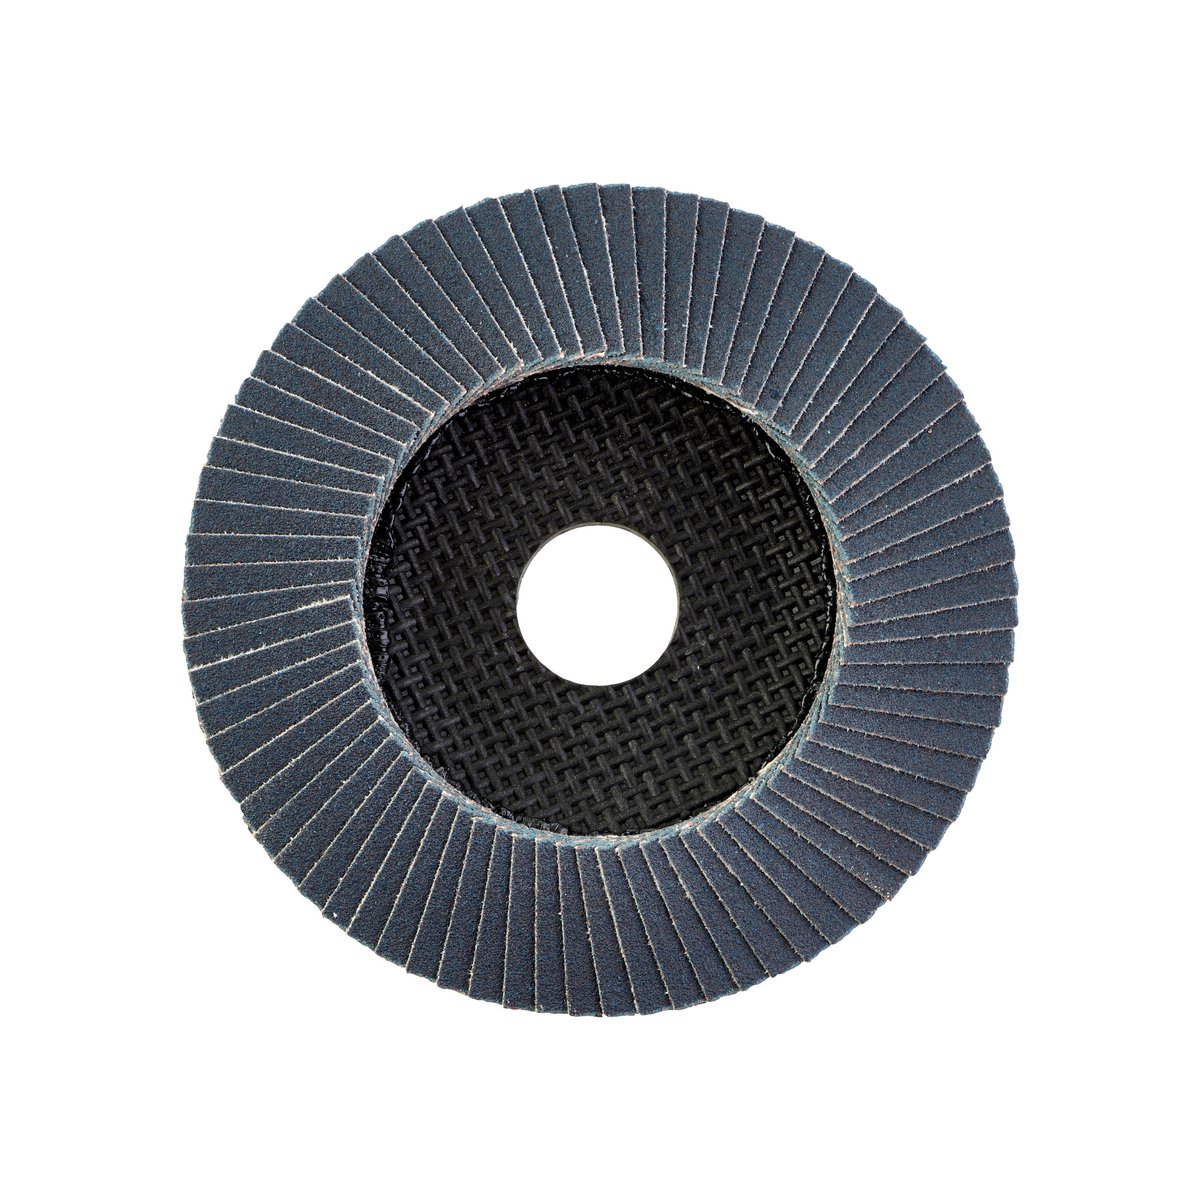 Лепестковый диск SL50/125G60 Zirconium 125 мм / Зерно 60 